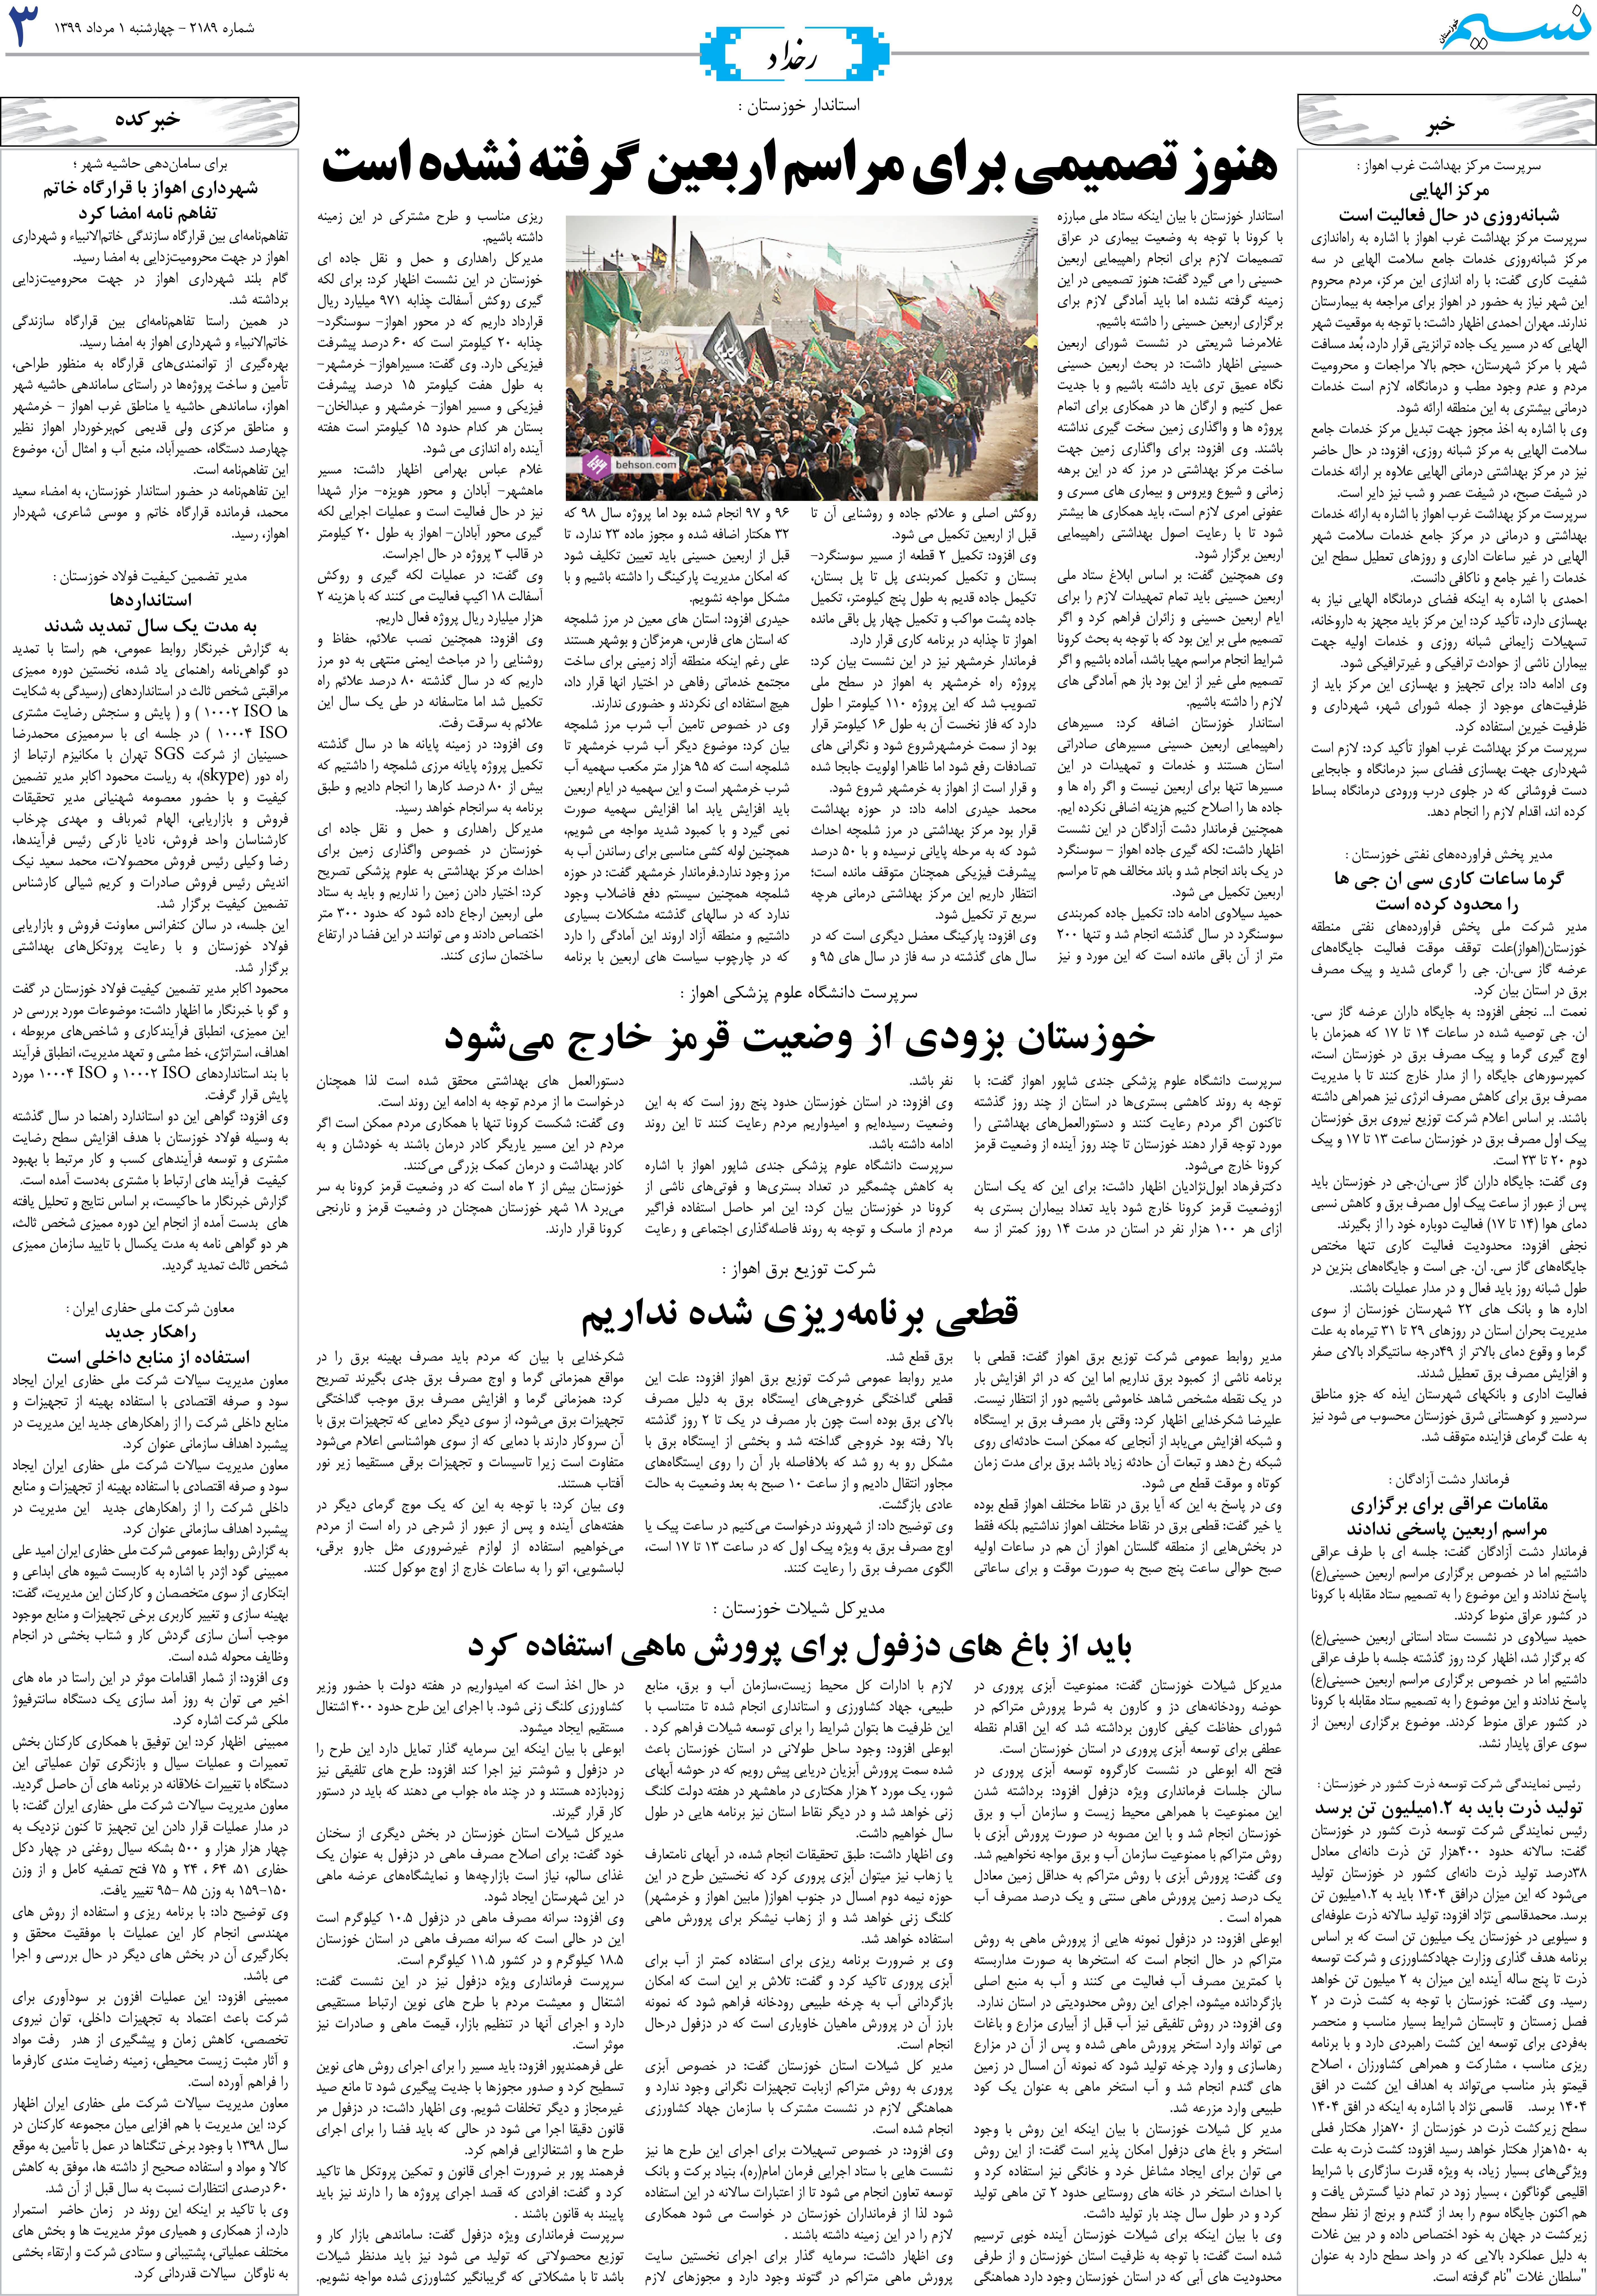 صفحه رخداد روزنامه نسیم شماره 2189